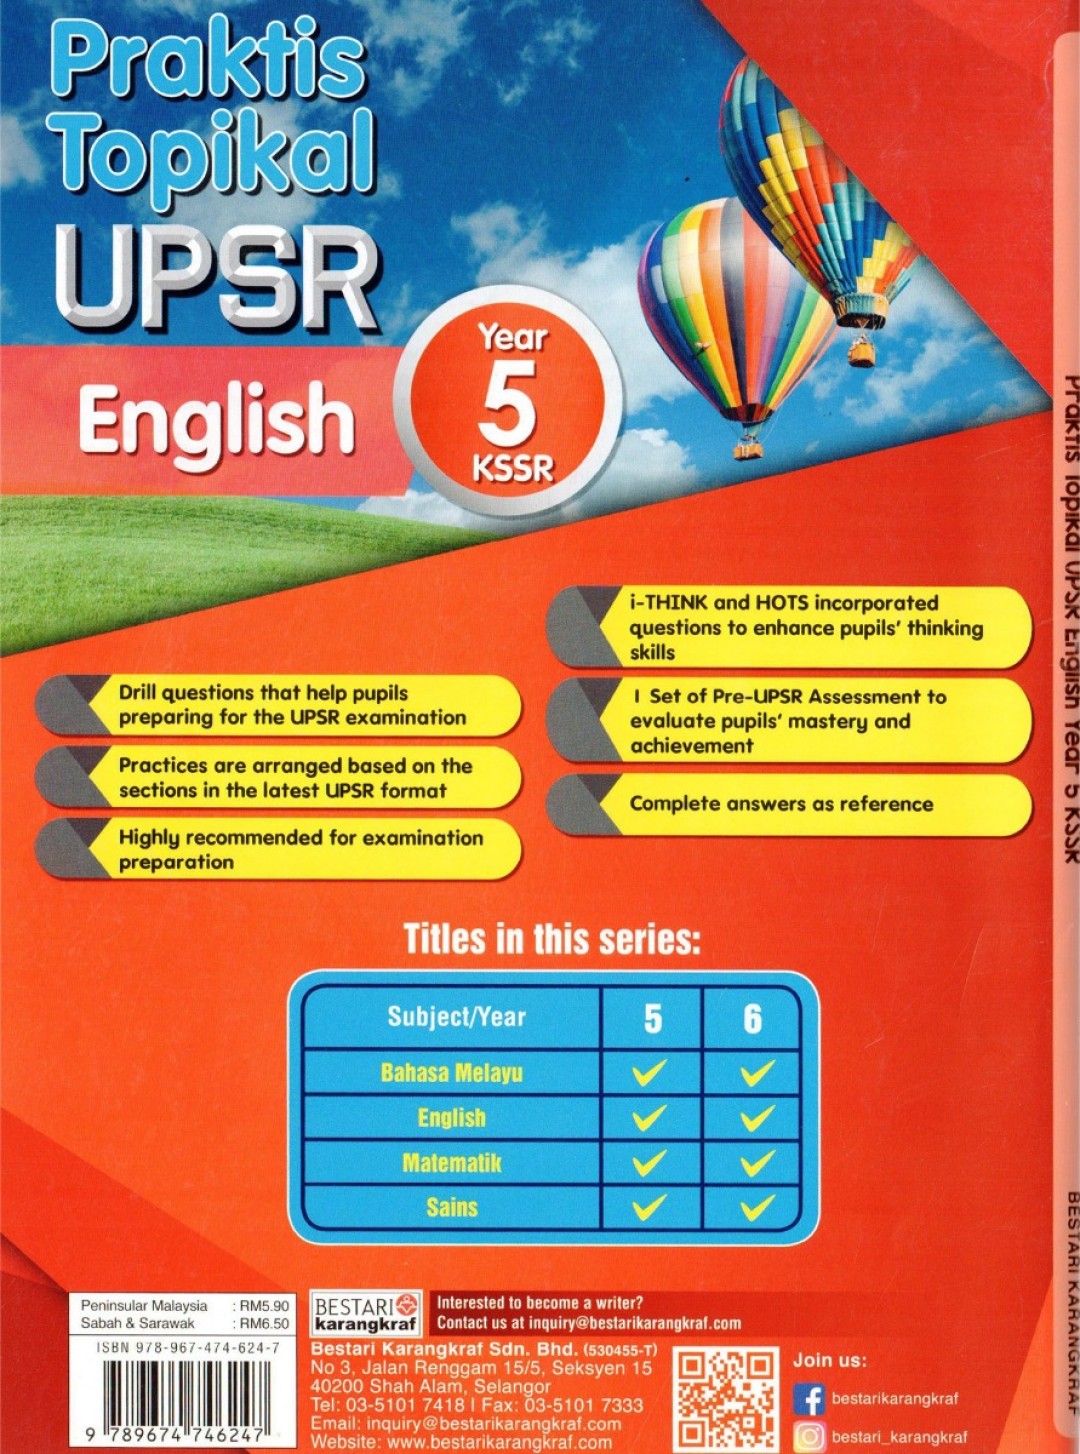 Praktis Topikal UPSR English Year 5 (2020)